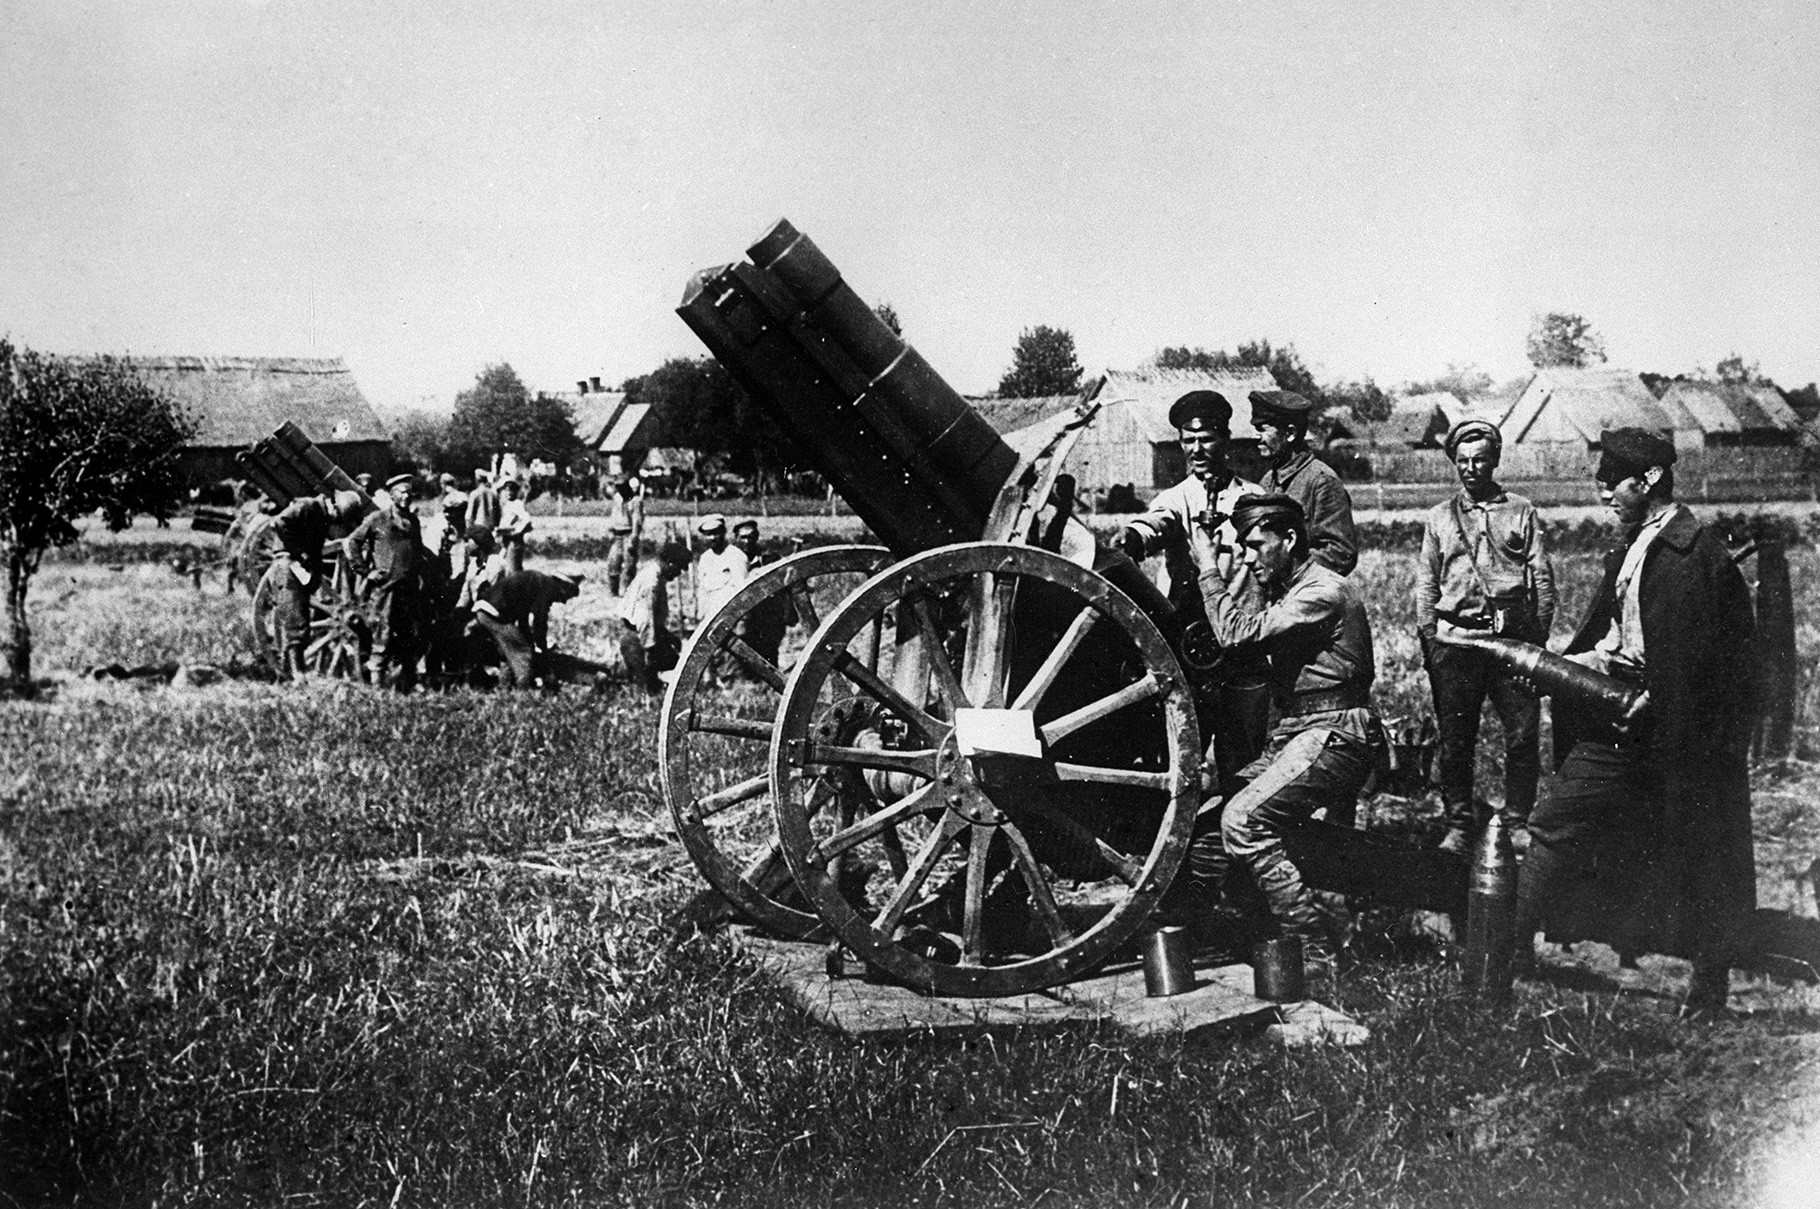 Sovjetska artiljerija u Sovjetsko-poljskom ratu. Ukrajina, 1920.